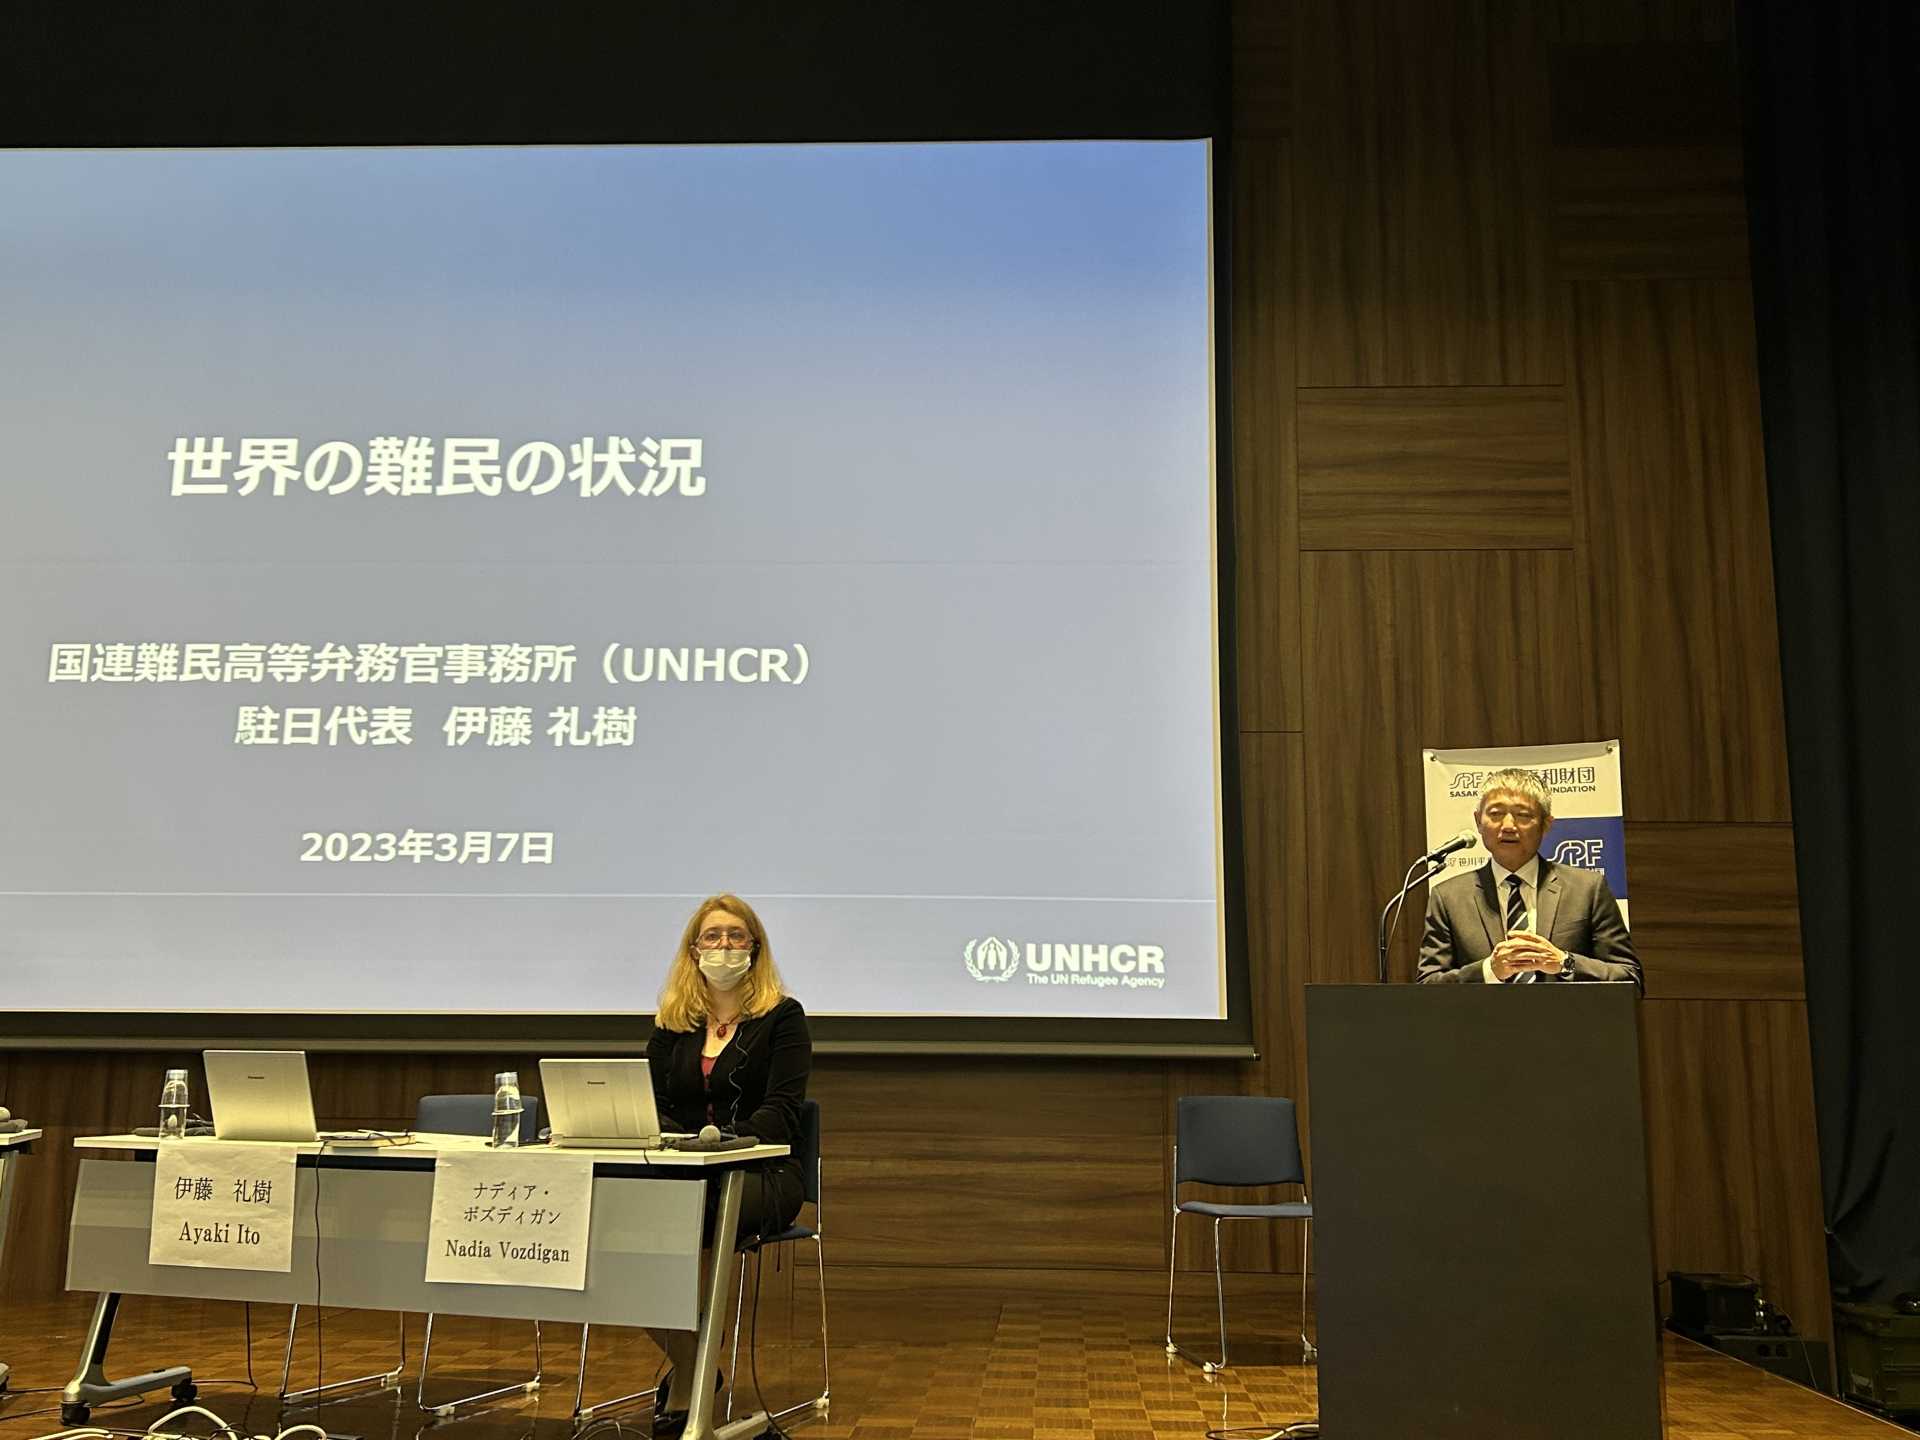 Mr. Ayaki Ito, UNHCR Representative in Japan